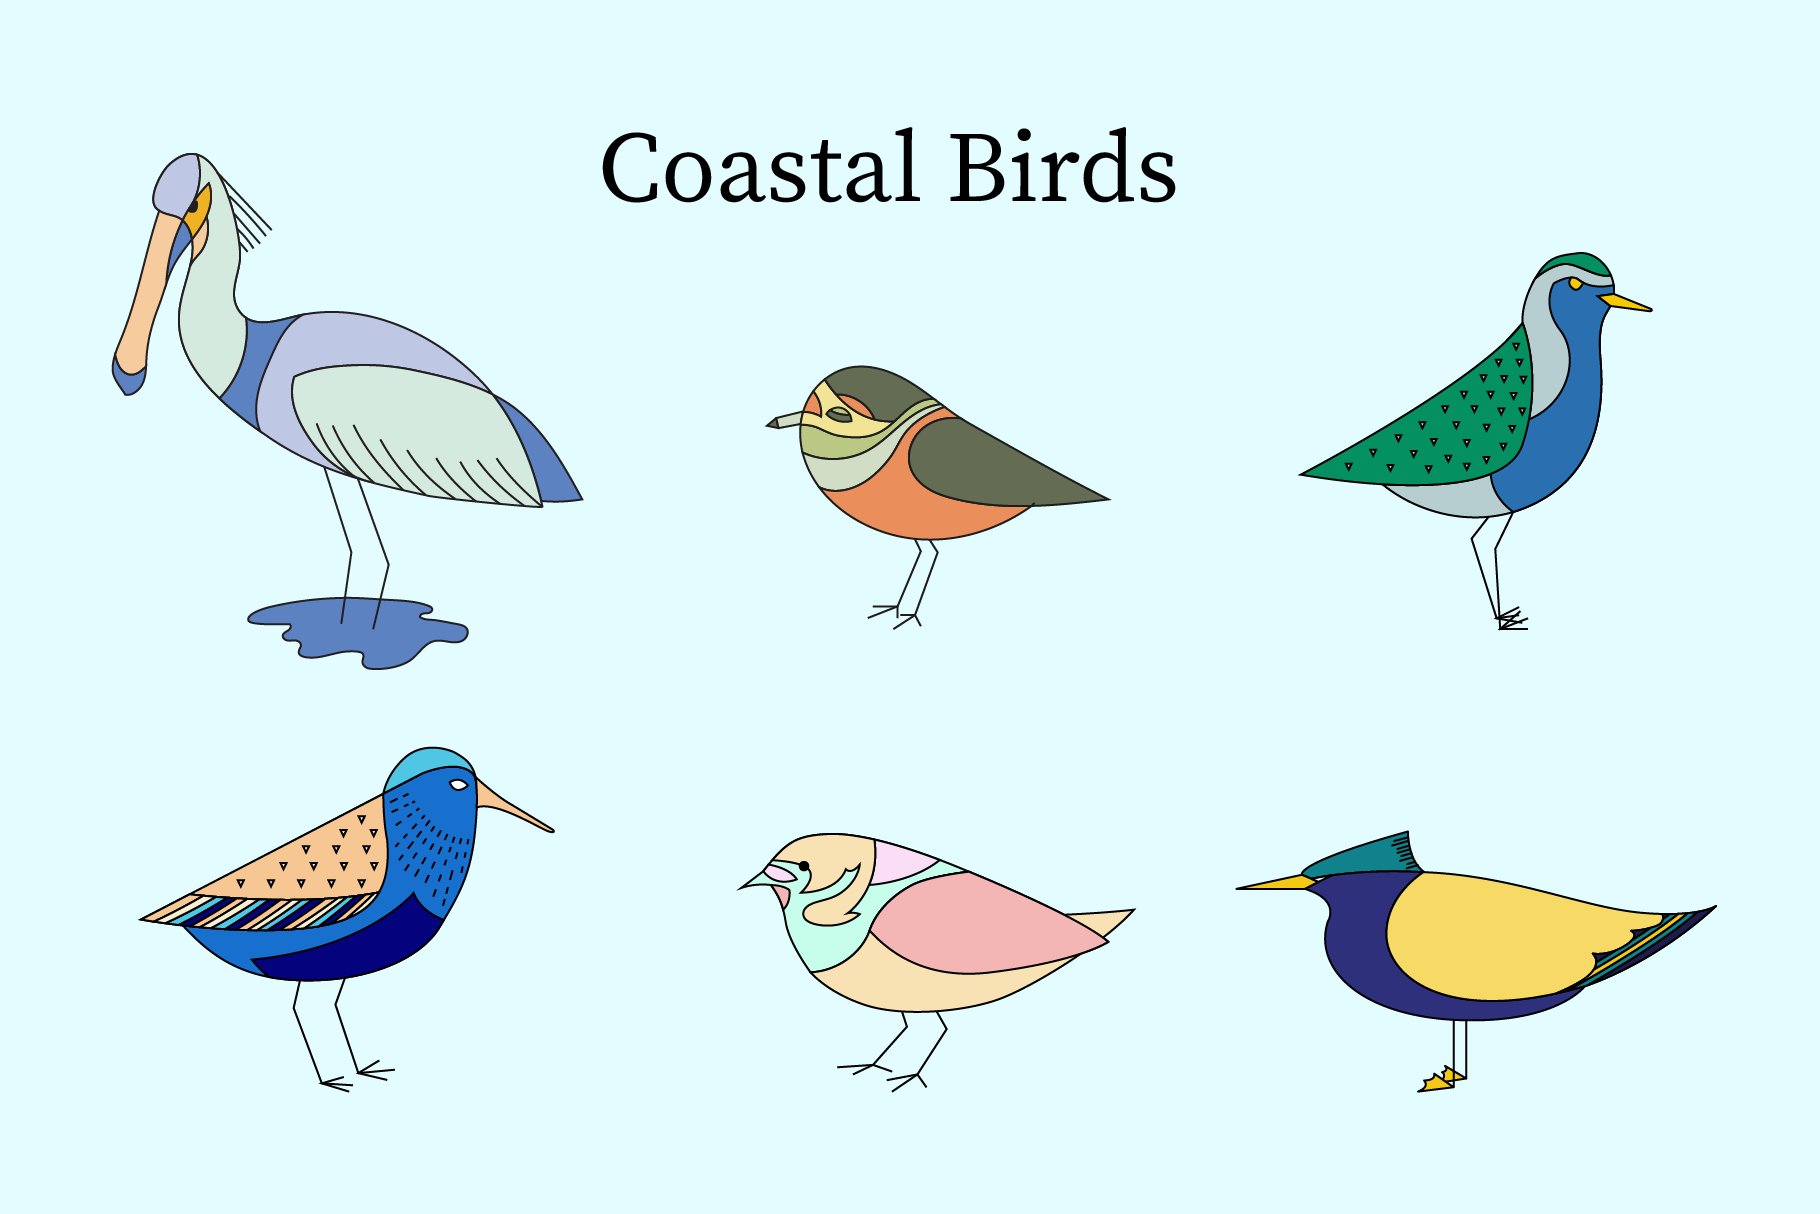 European Coastal Birds cover image.